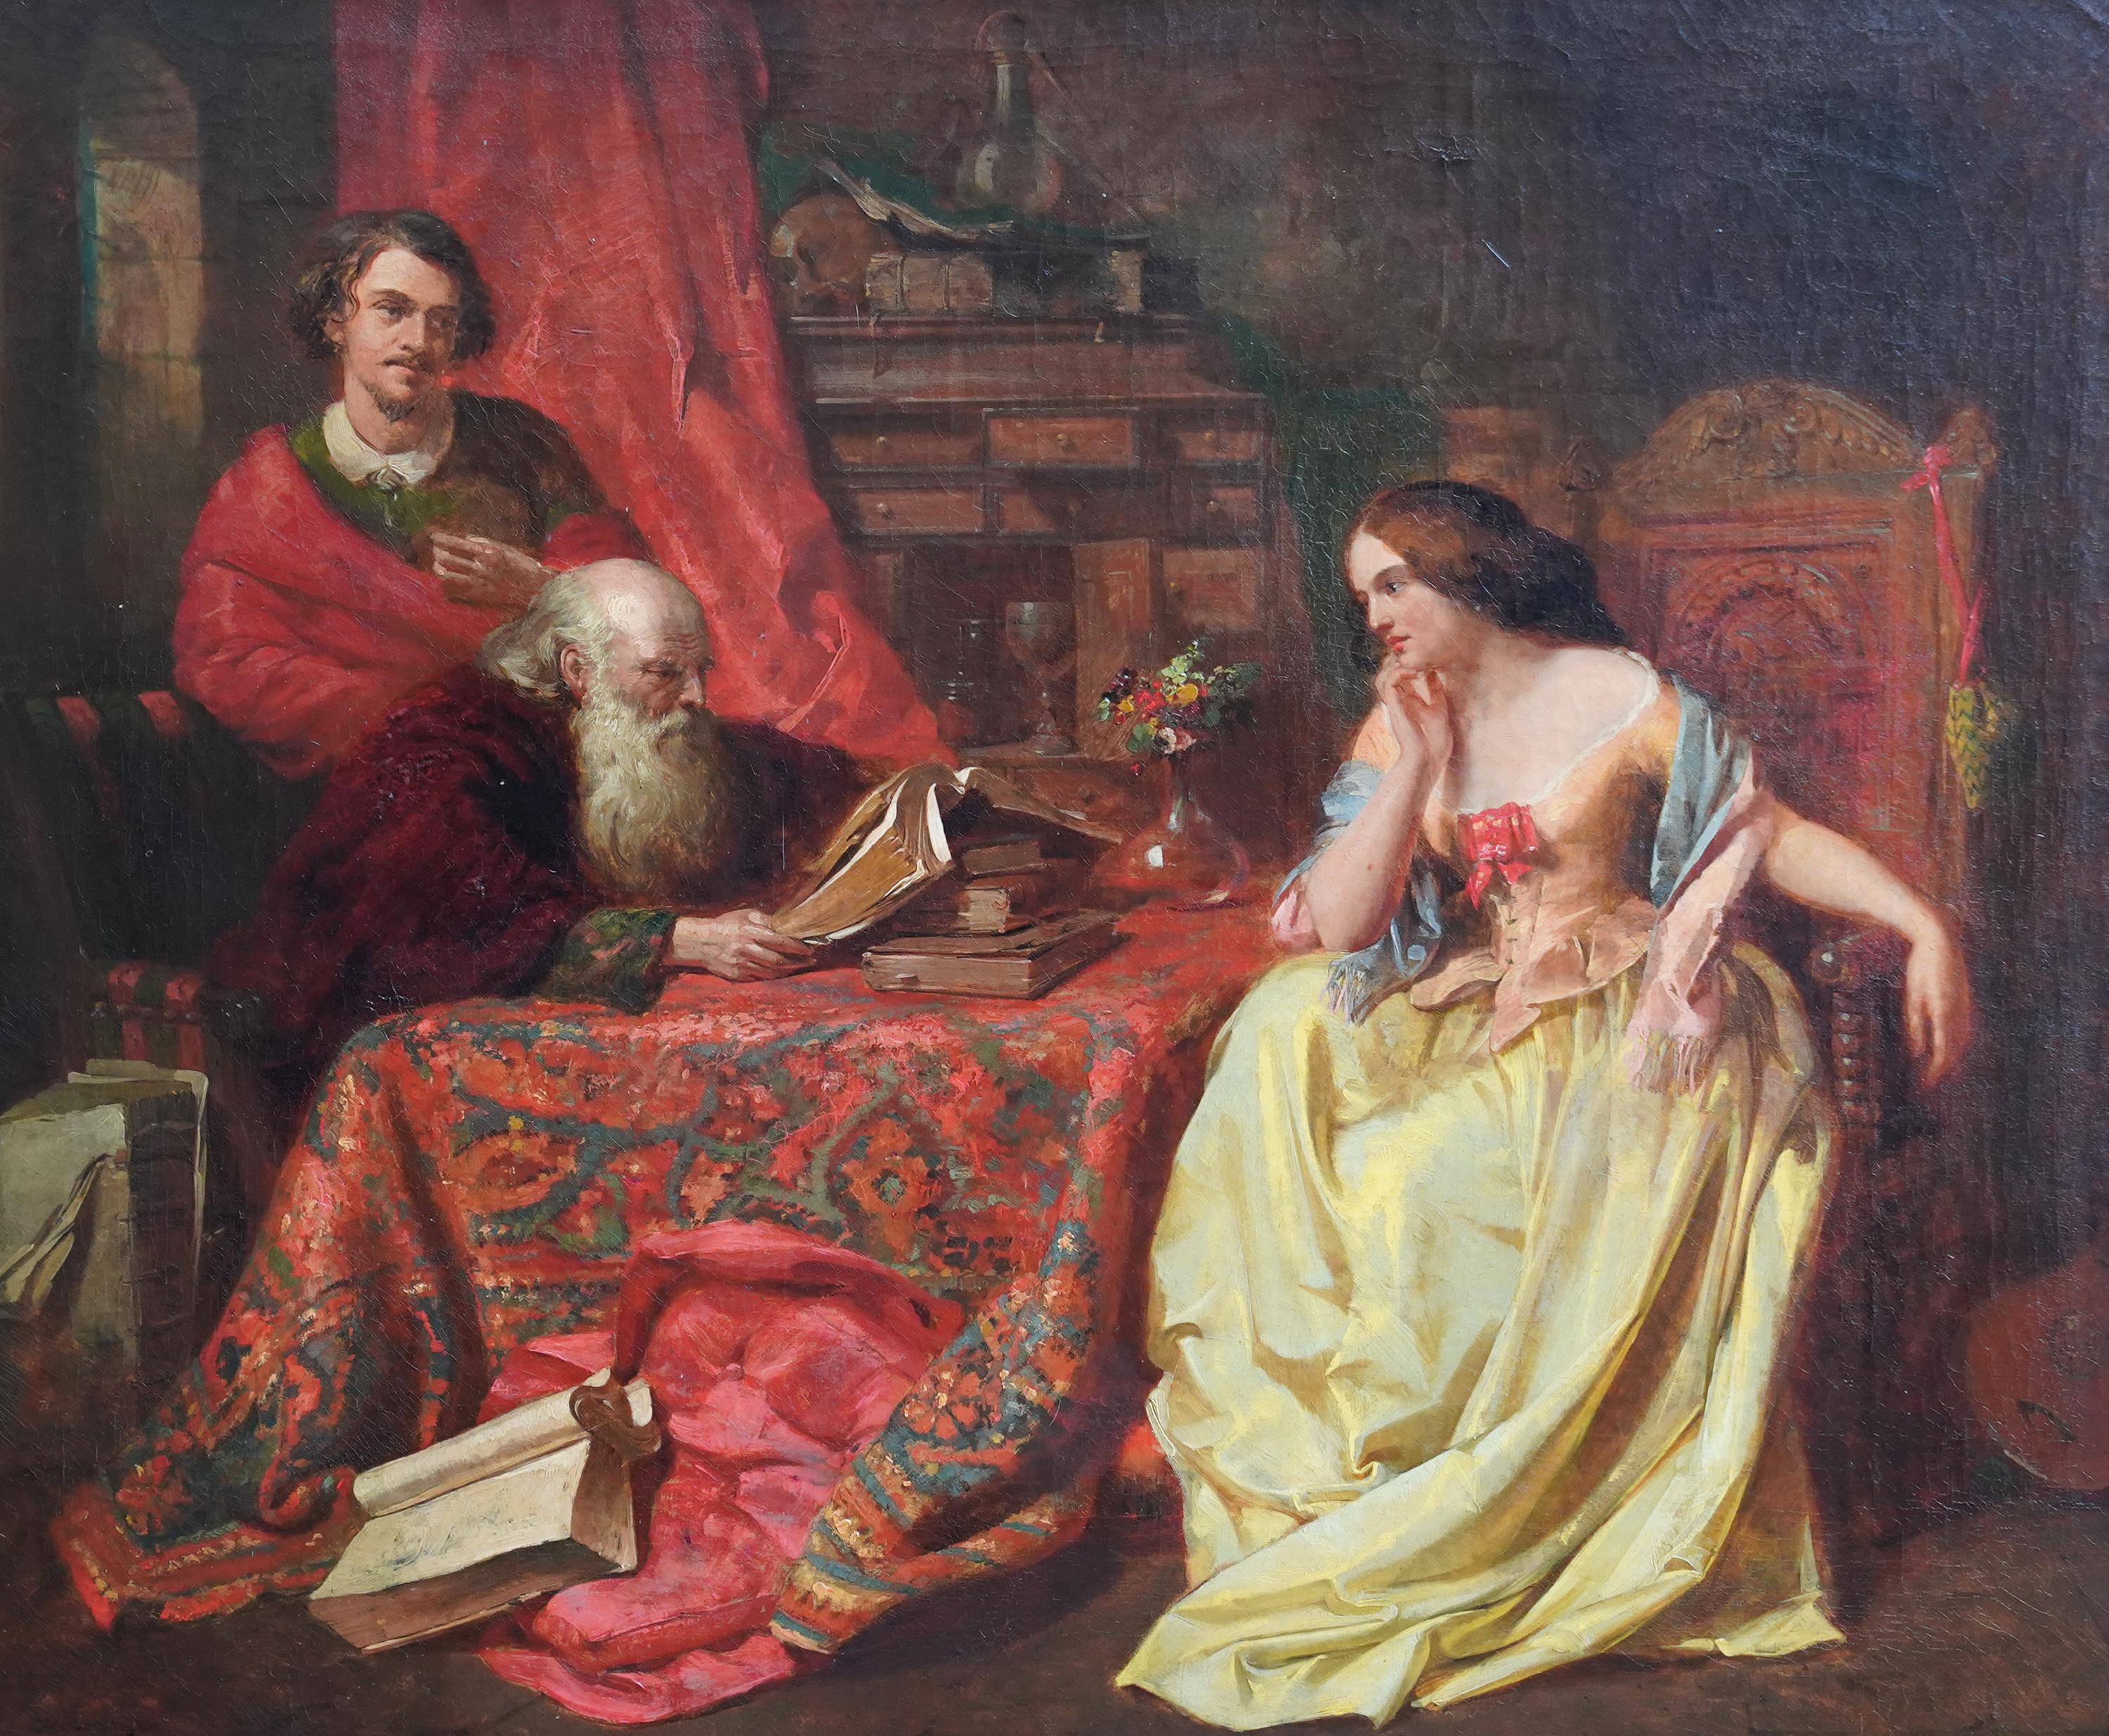 The Lesson - Portrait Interior - lecture à l'huile d'art victorien britannique - Painting de John Eaton Walker RBSA 